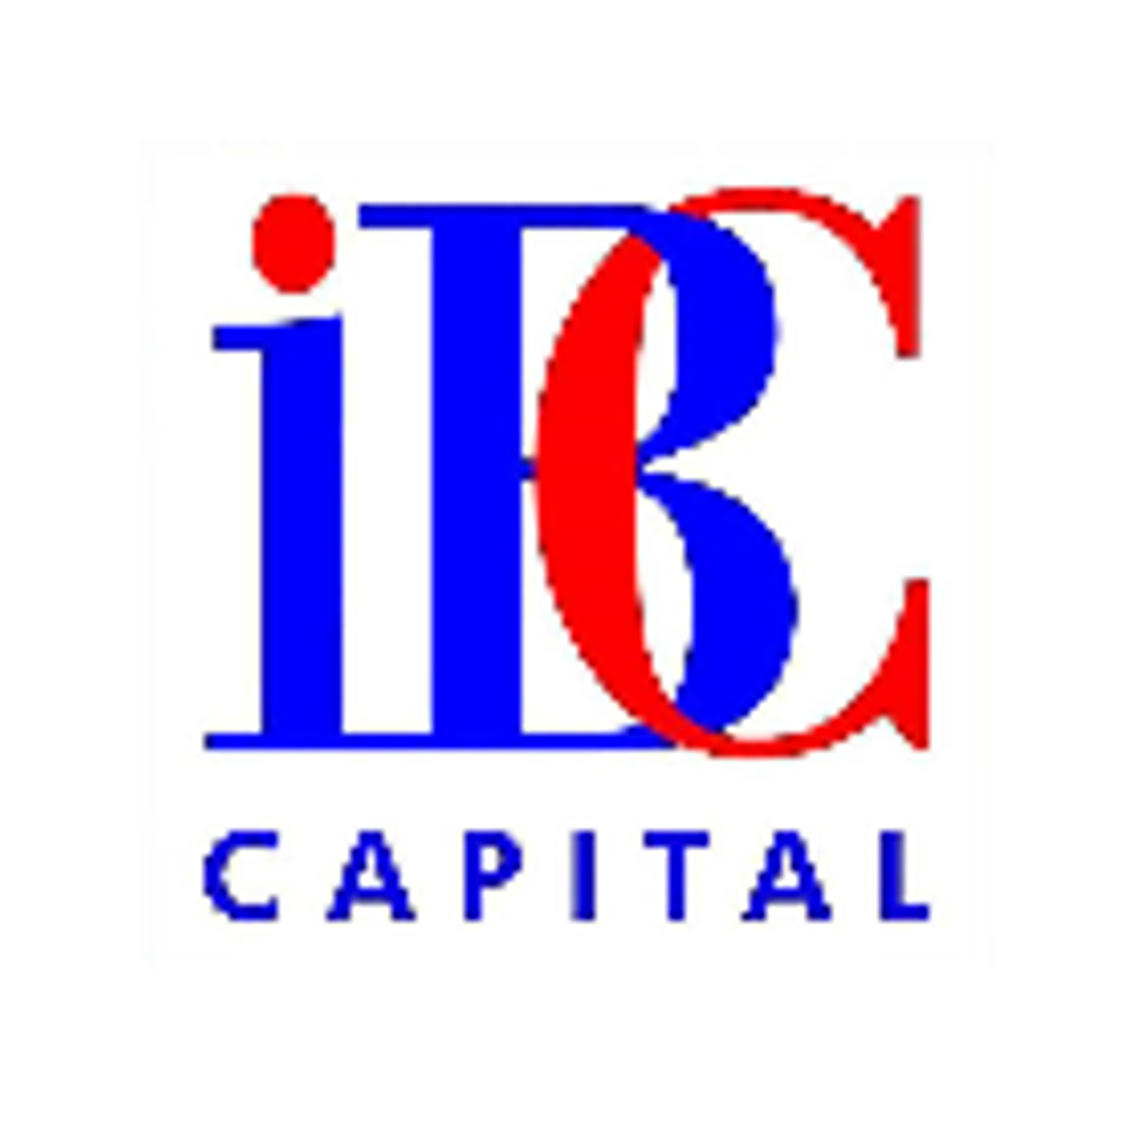 IBC Capital